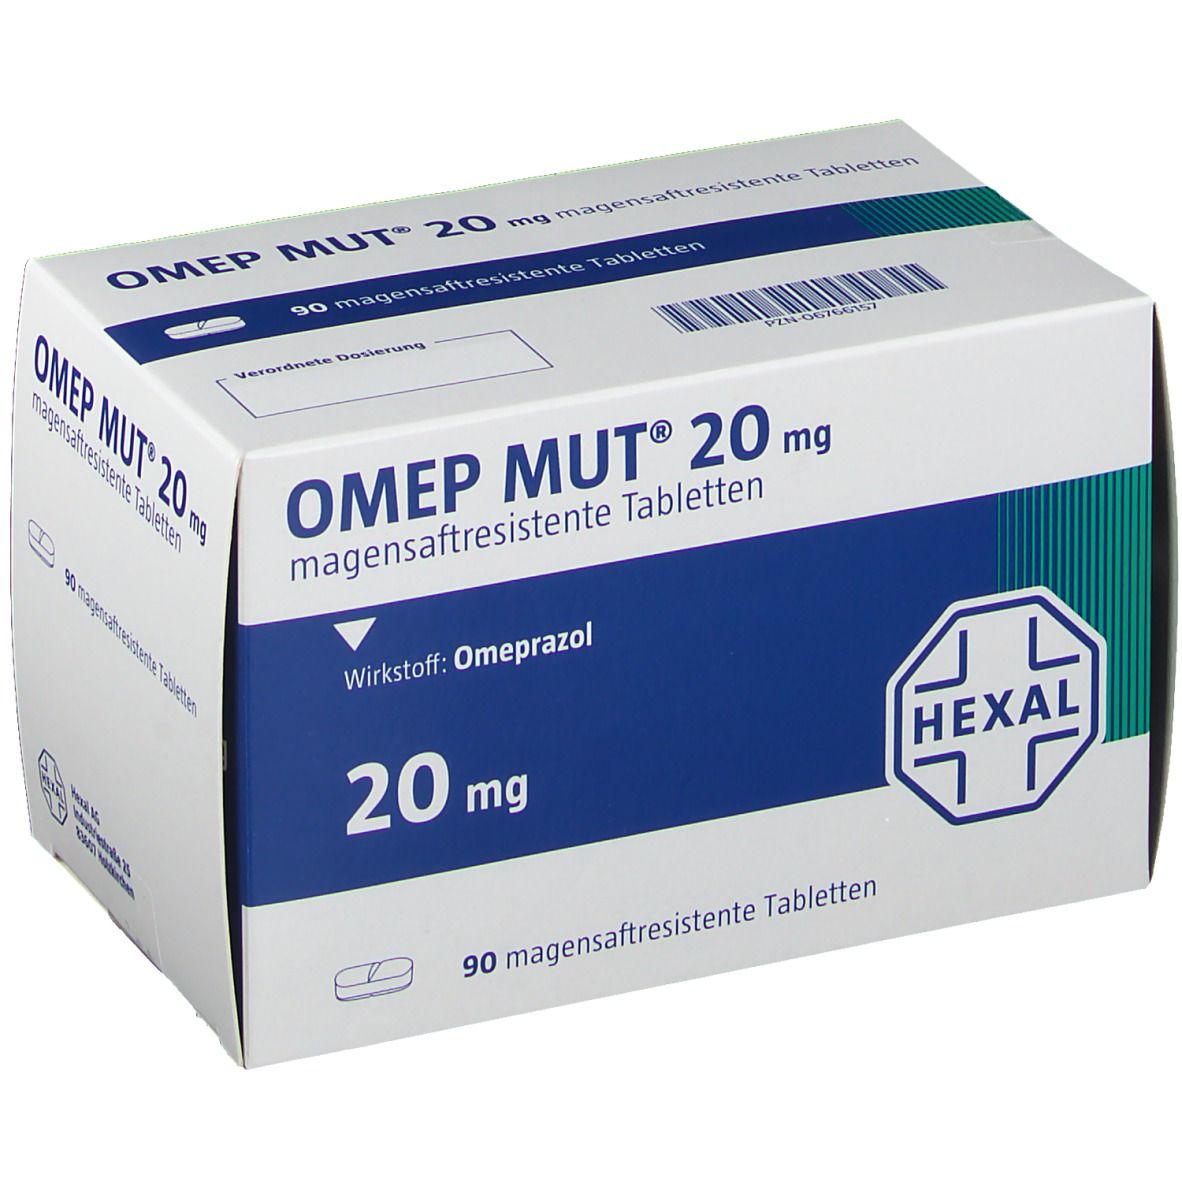 OMEP® MUT® 20 mg